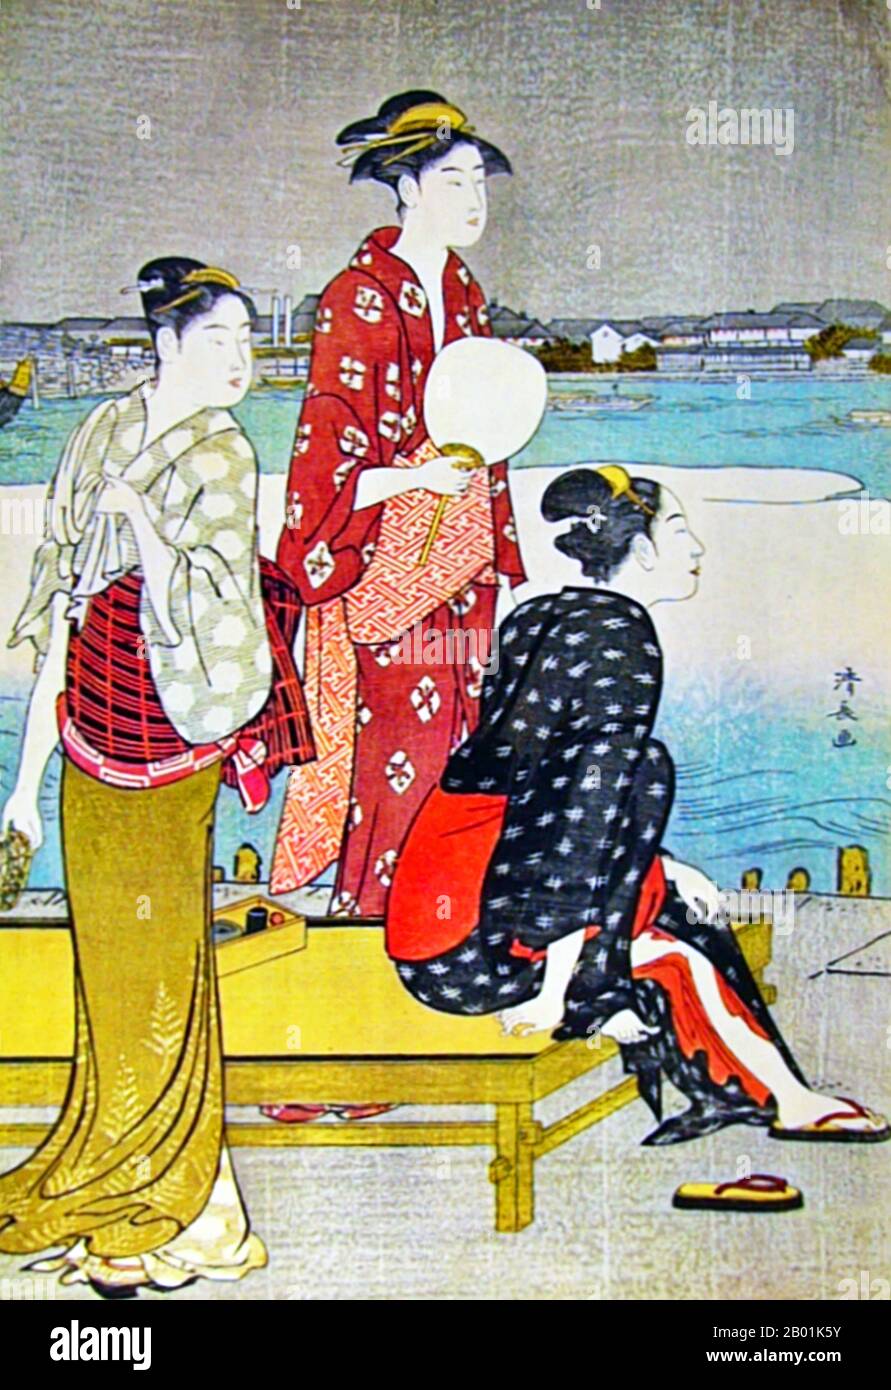 Japan: „Cooling off by the Riverside“. Ukiyo-e Holzschnitt von Torii Kiyonaga (1752 - 28. Juni 1815), ca. 1785. Torii Kiyonaga war ein japanischer Ukiyo-e-Printmacher und Maler der Torii-Schule. Ursprünglich Sekiguchi Shinsuke, der Sohn eines Edo-Buchhändlers, nahm er Torii Kiyonaga als Künstlernamen (gō) an. Obwohl er nicht biologisch mit der Familie Torii verwandt ist, wurde er nach dem Tod seines Adoptivvaters und Lehrers Torii Kiyomitsu Leiter der Gruppe. Stockfoto